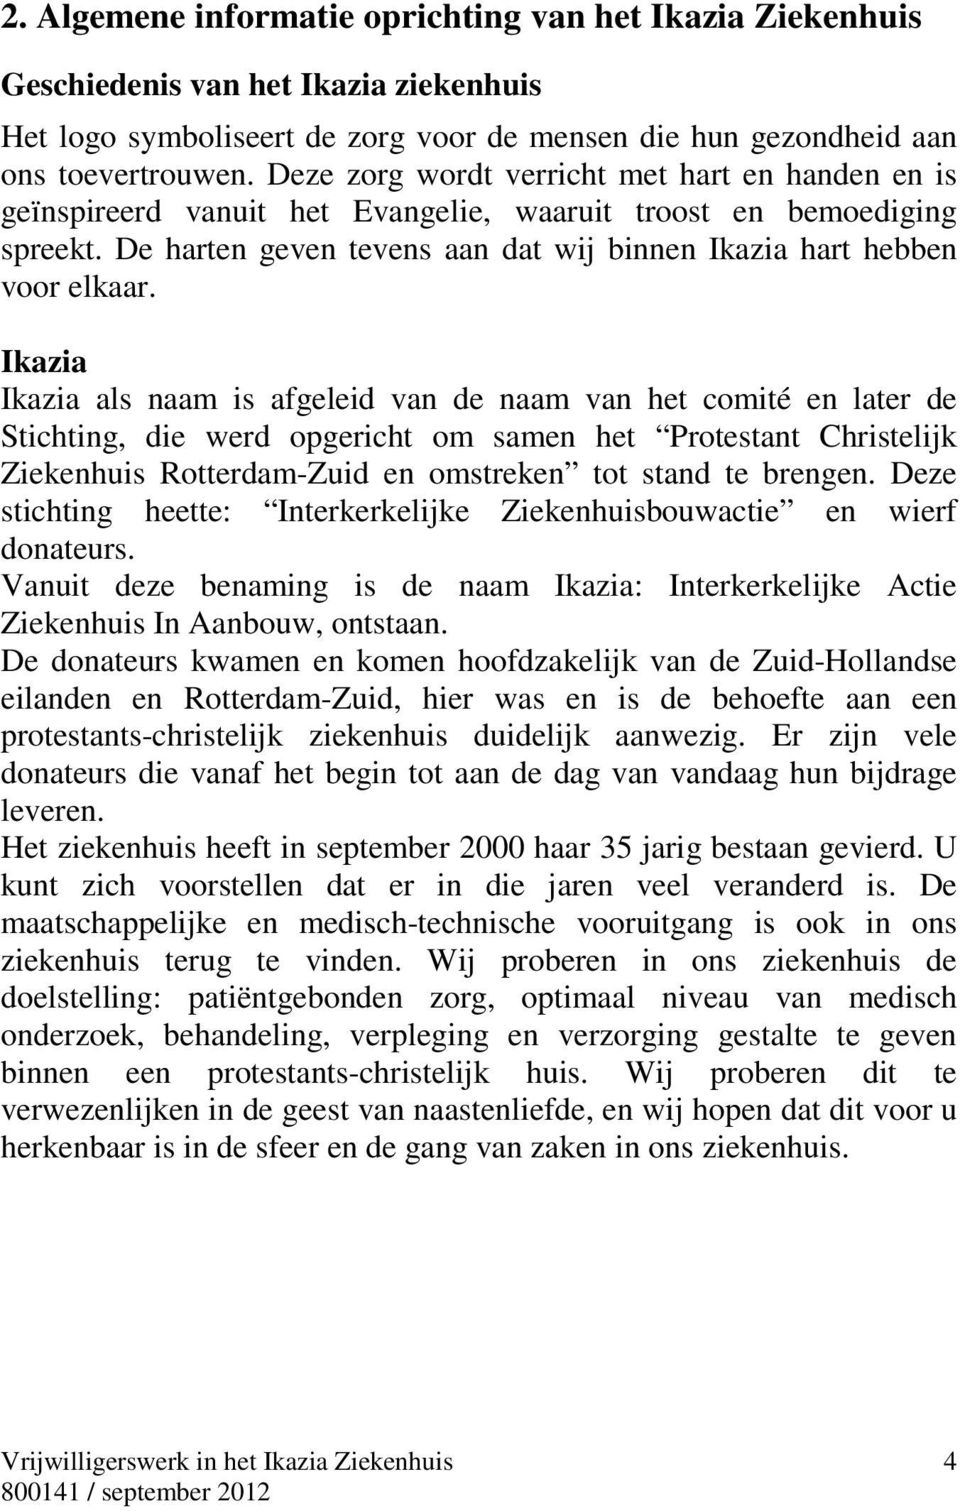 Ikazia Ikazia als naam is afgeleid van de naam van het comité en later de Stichting, die werd opgericht om samen het Protestant Christelijk Ziekenhuis Rotterdam-Zuid en omstreken tot stand te brengen.